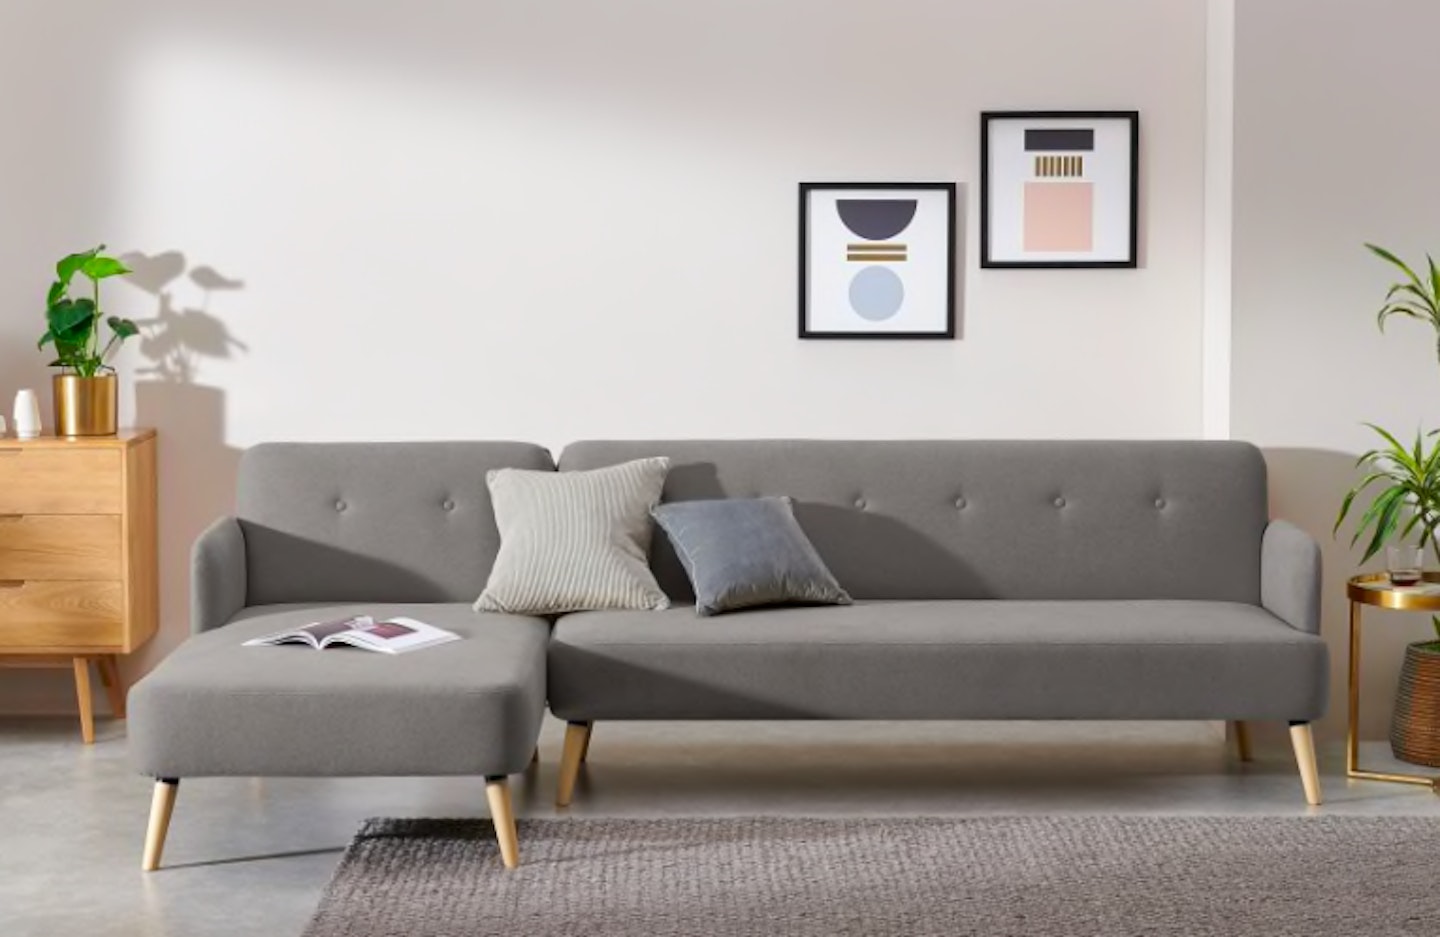 The Top 10 Made Com Sofa Beds 2022